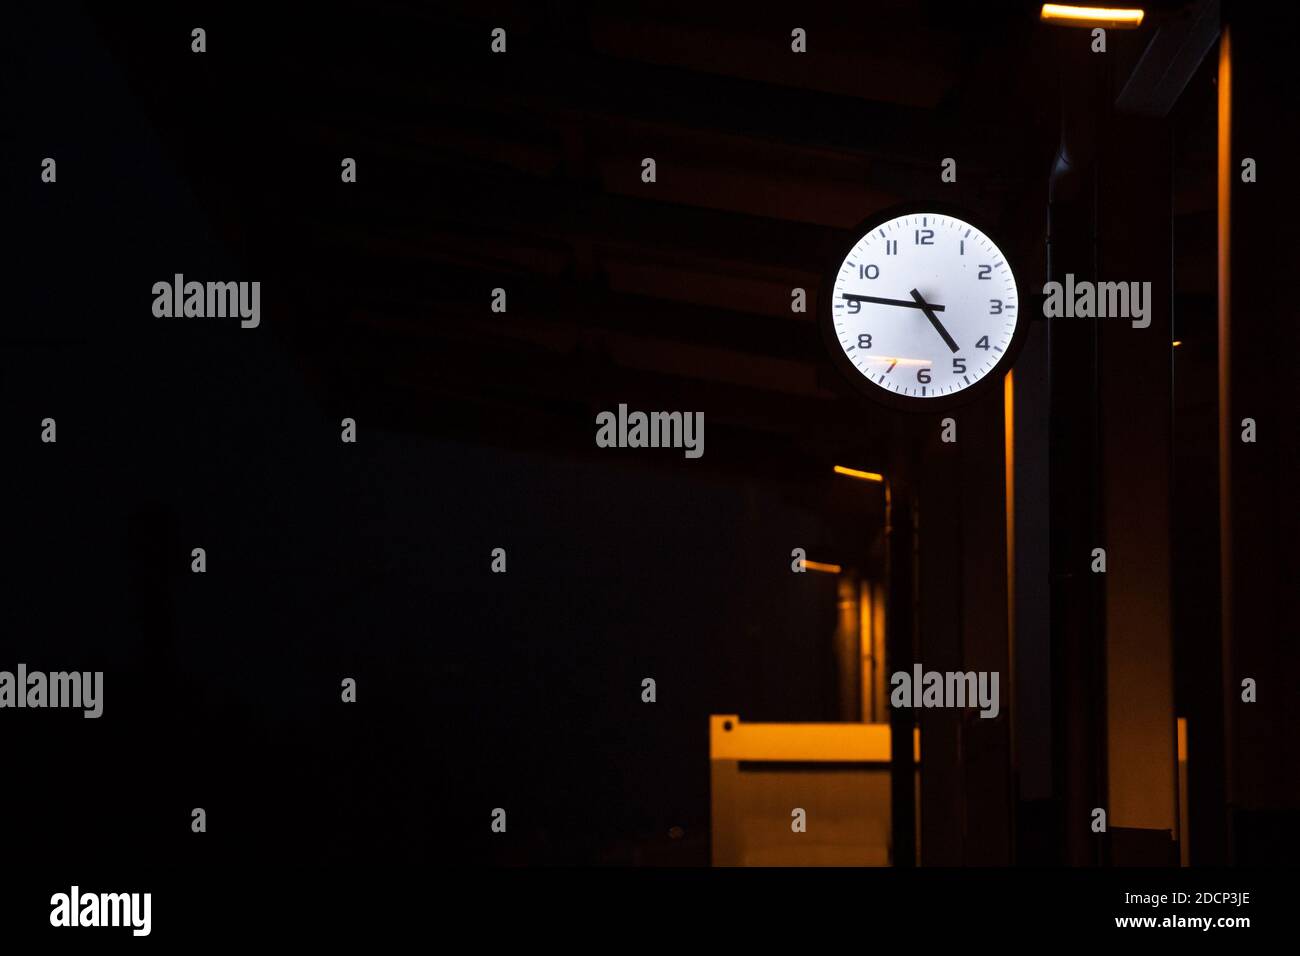 Orologio analogico sulla piattaforma di una stazione ferroviaria centrale di notte, durante una serata buia, che indica l'ora esatta. Immagine della piattaforma di una t Foto Stock